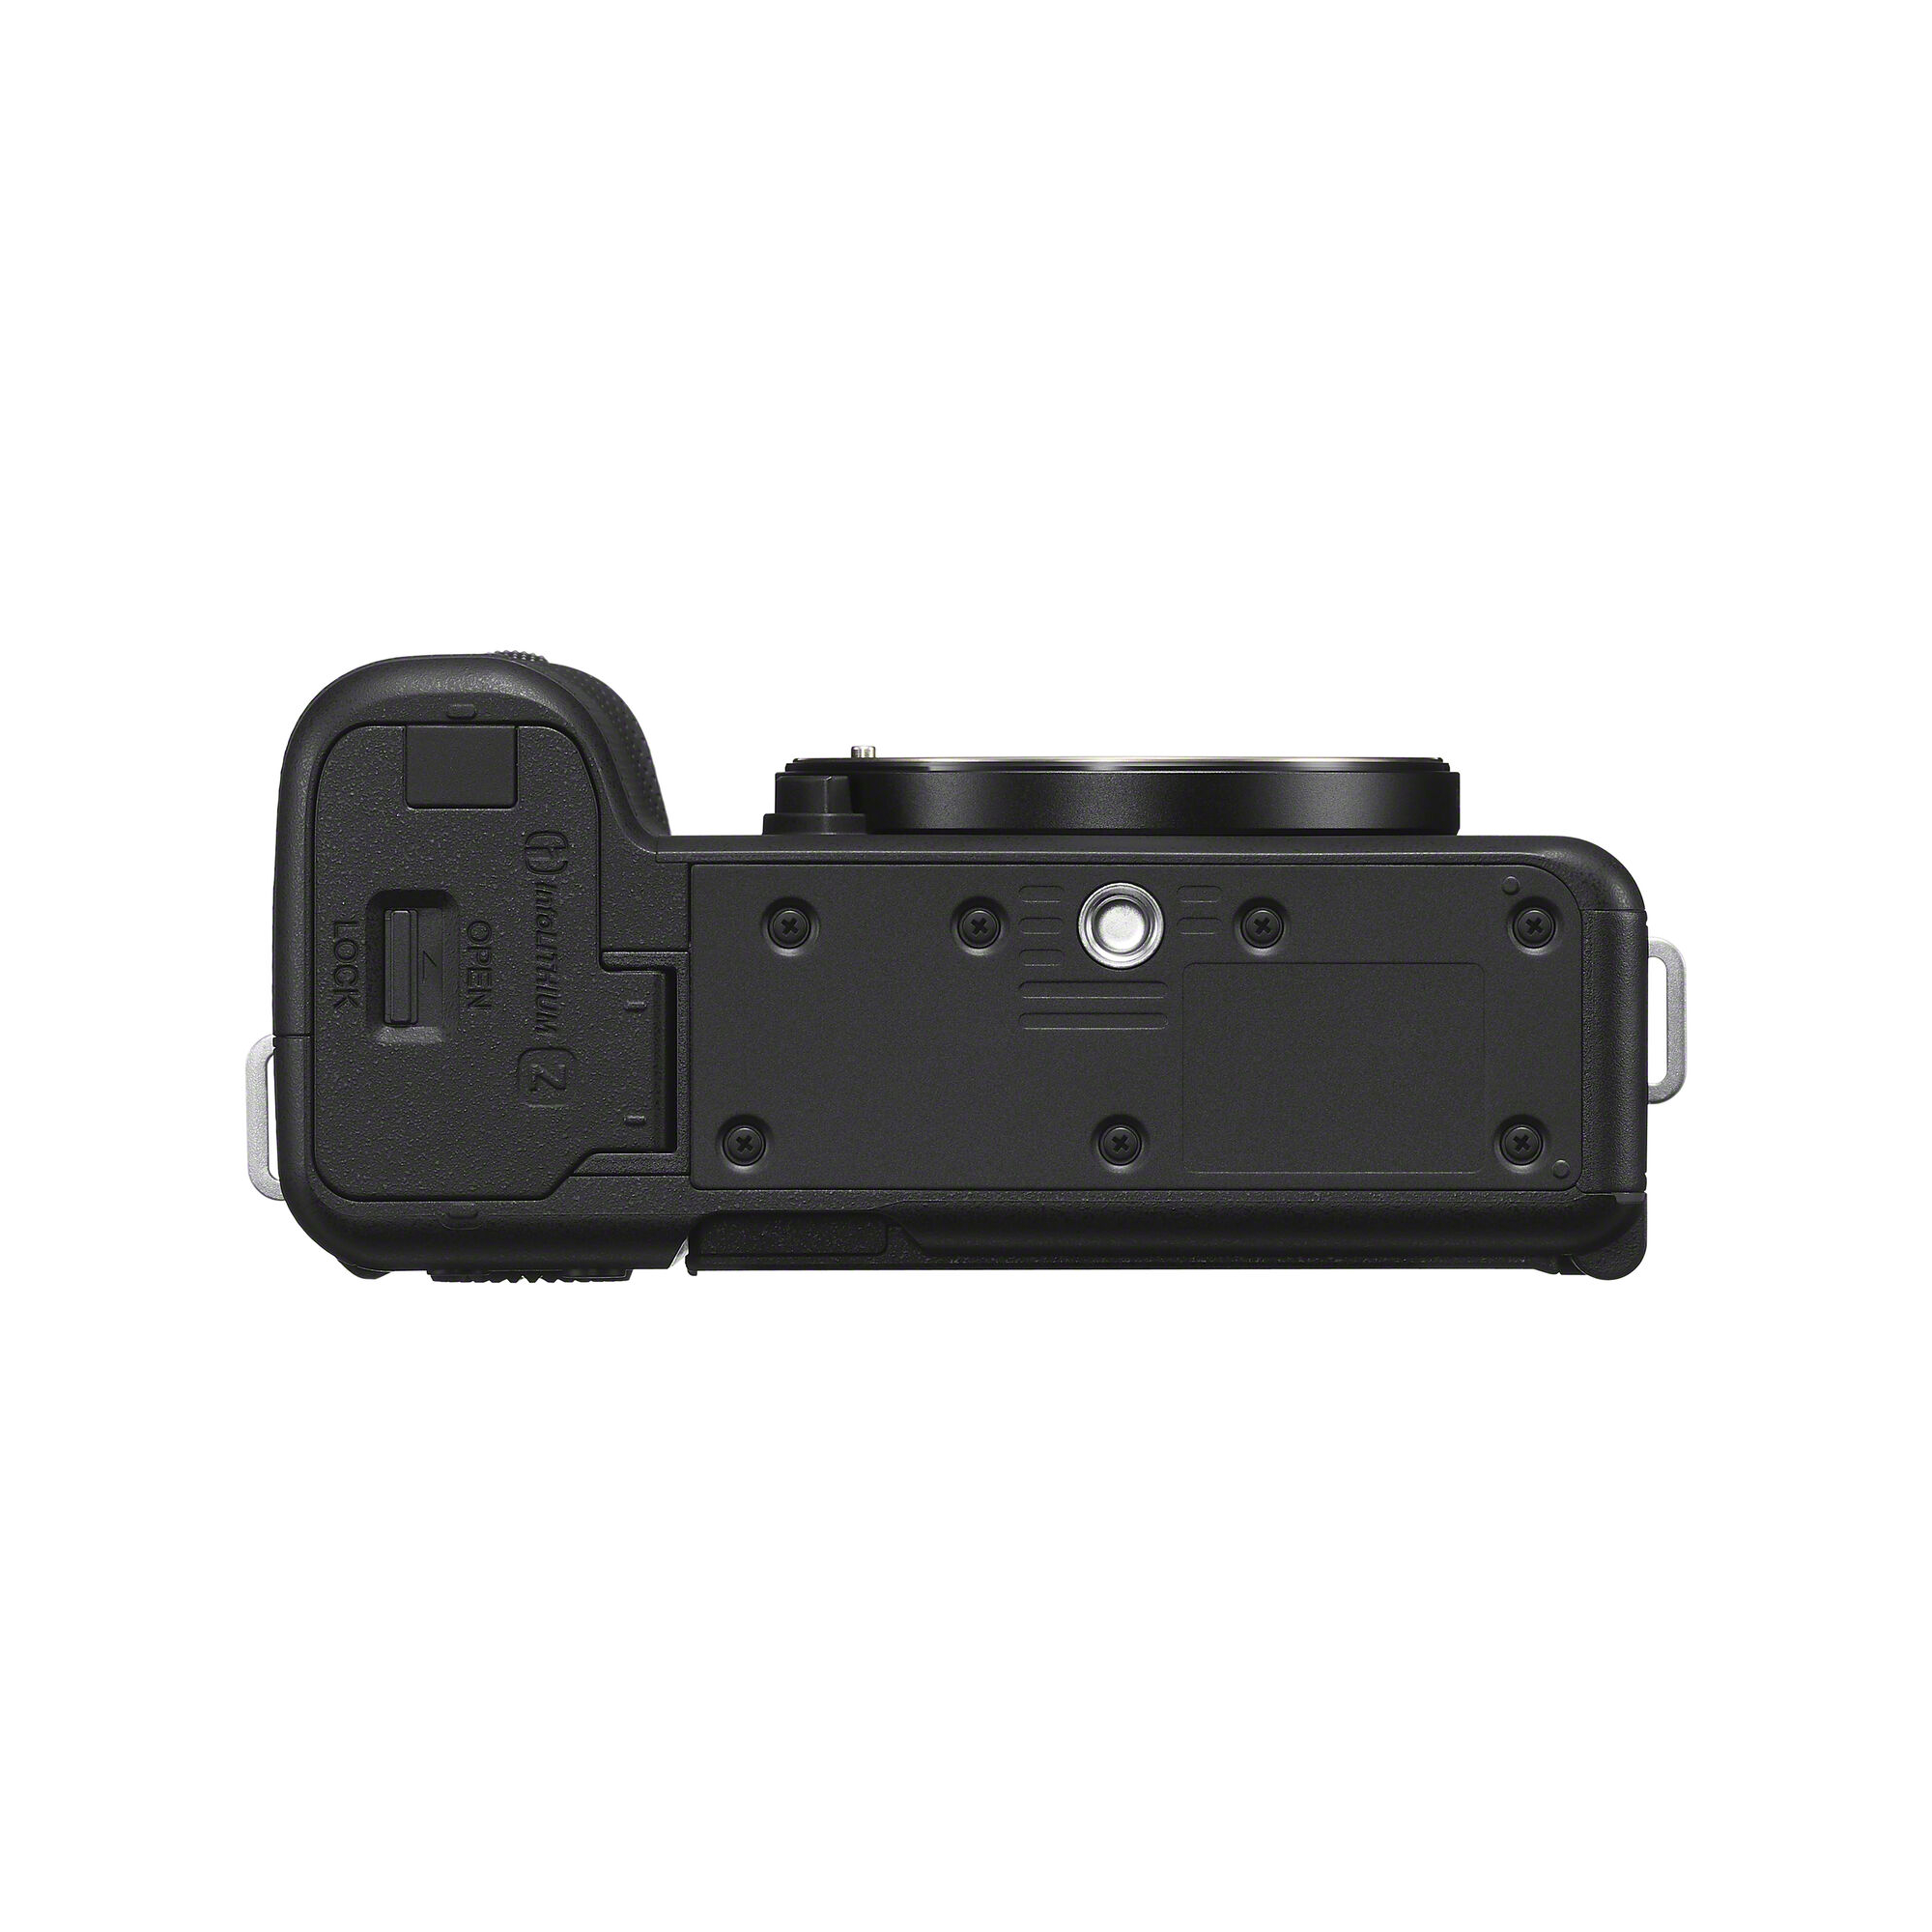 Sony Alpha ZV-E1 Mirrorless Camera (Black)